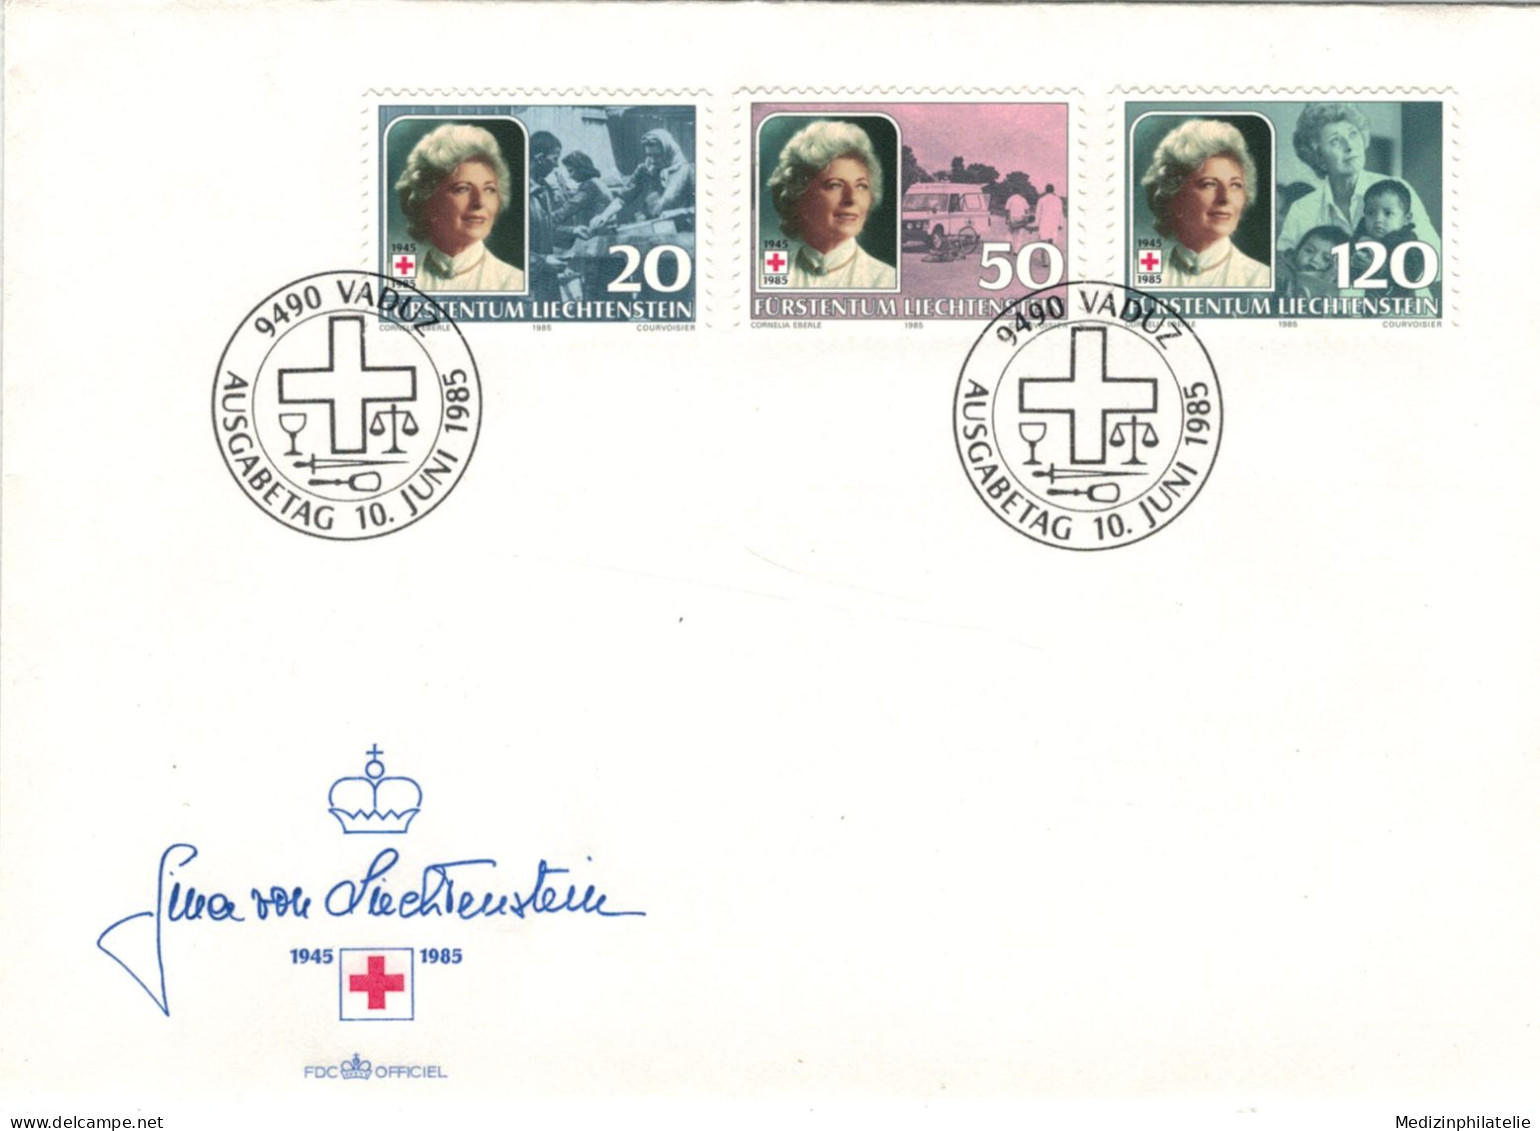 Rotes Kreuz - 9490 Vaduz 1985 Gina Von Liechtenstein - Erste Hilfe